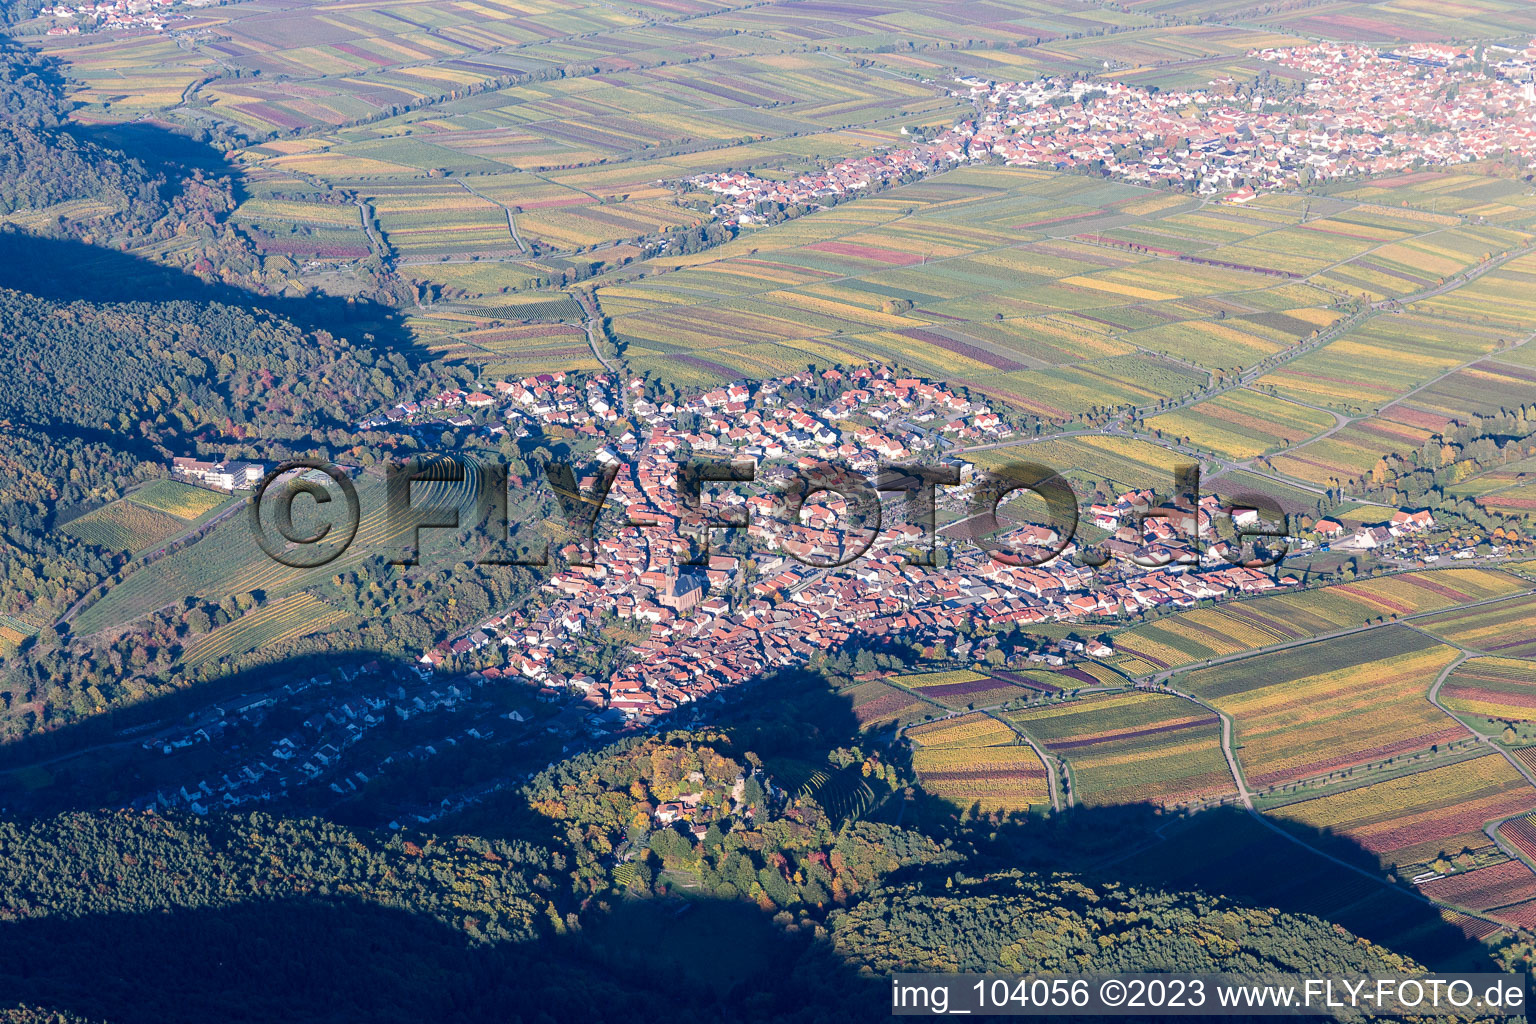 Luftbild von St. Martin in Sankt Martin im Bundesland Rheinland-Pfalz, Deutschland